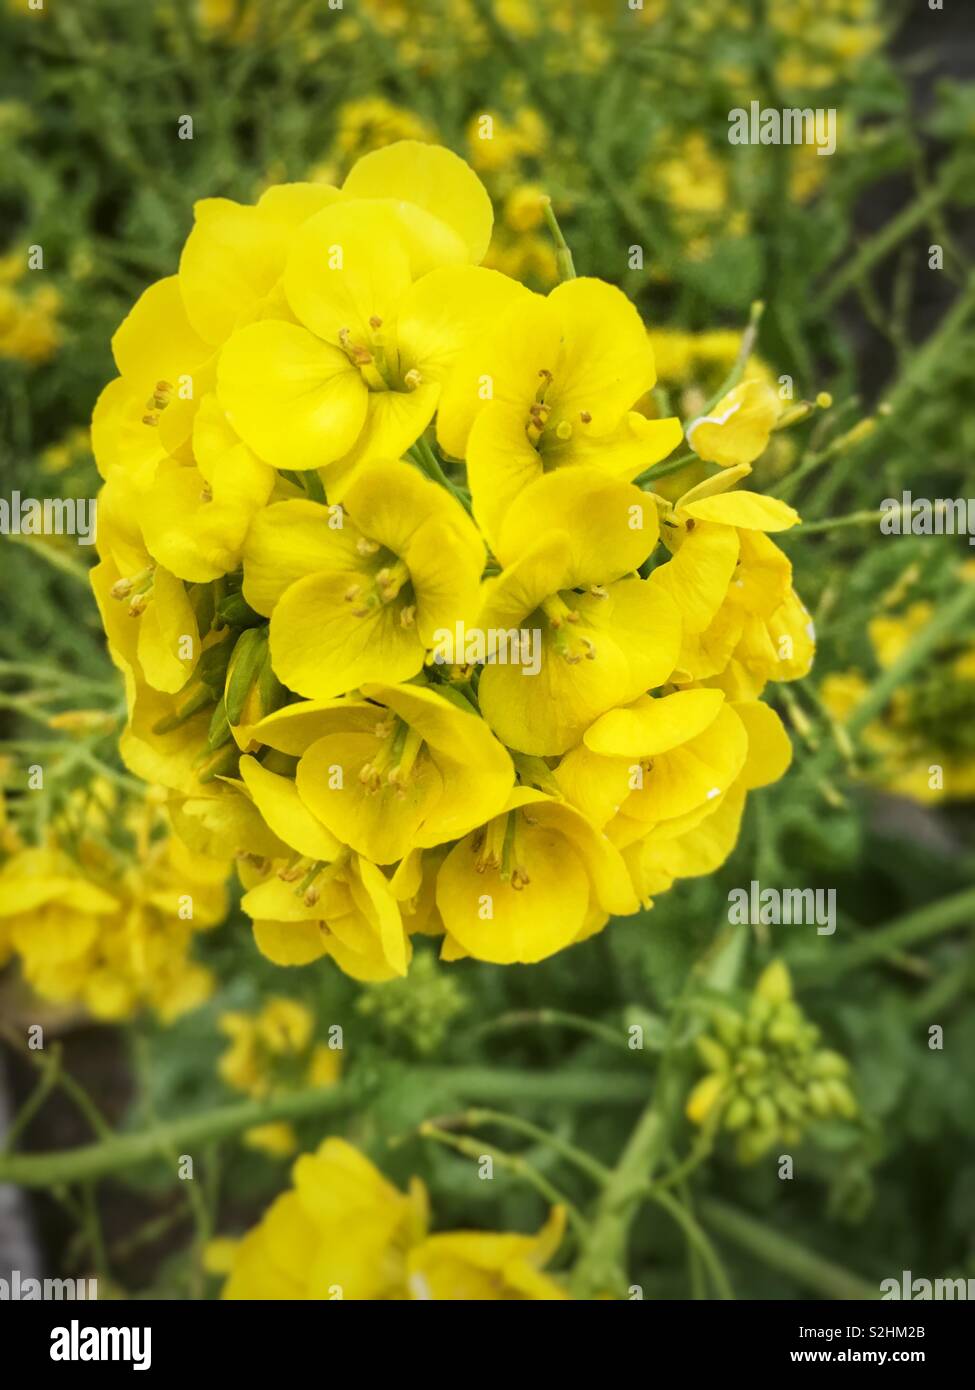 Canola flowers Stock Photo